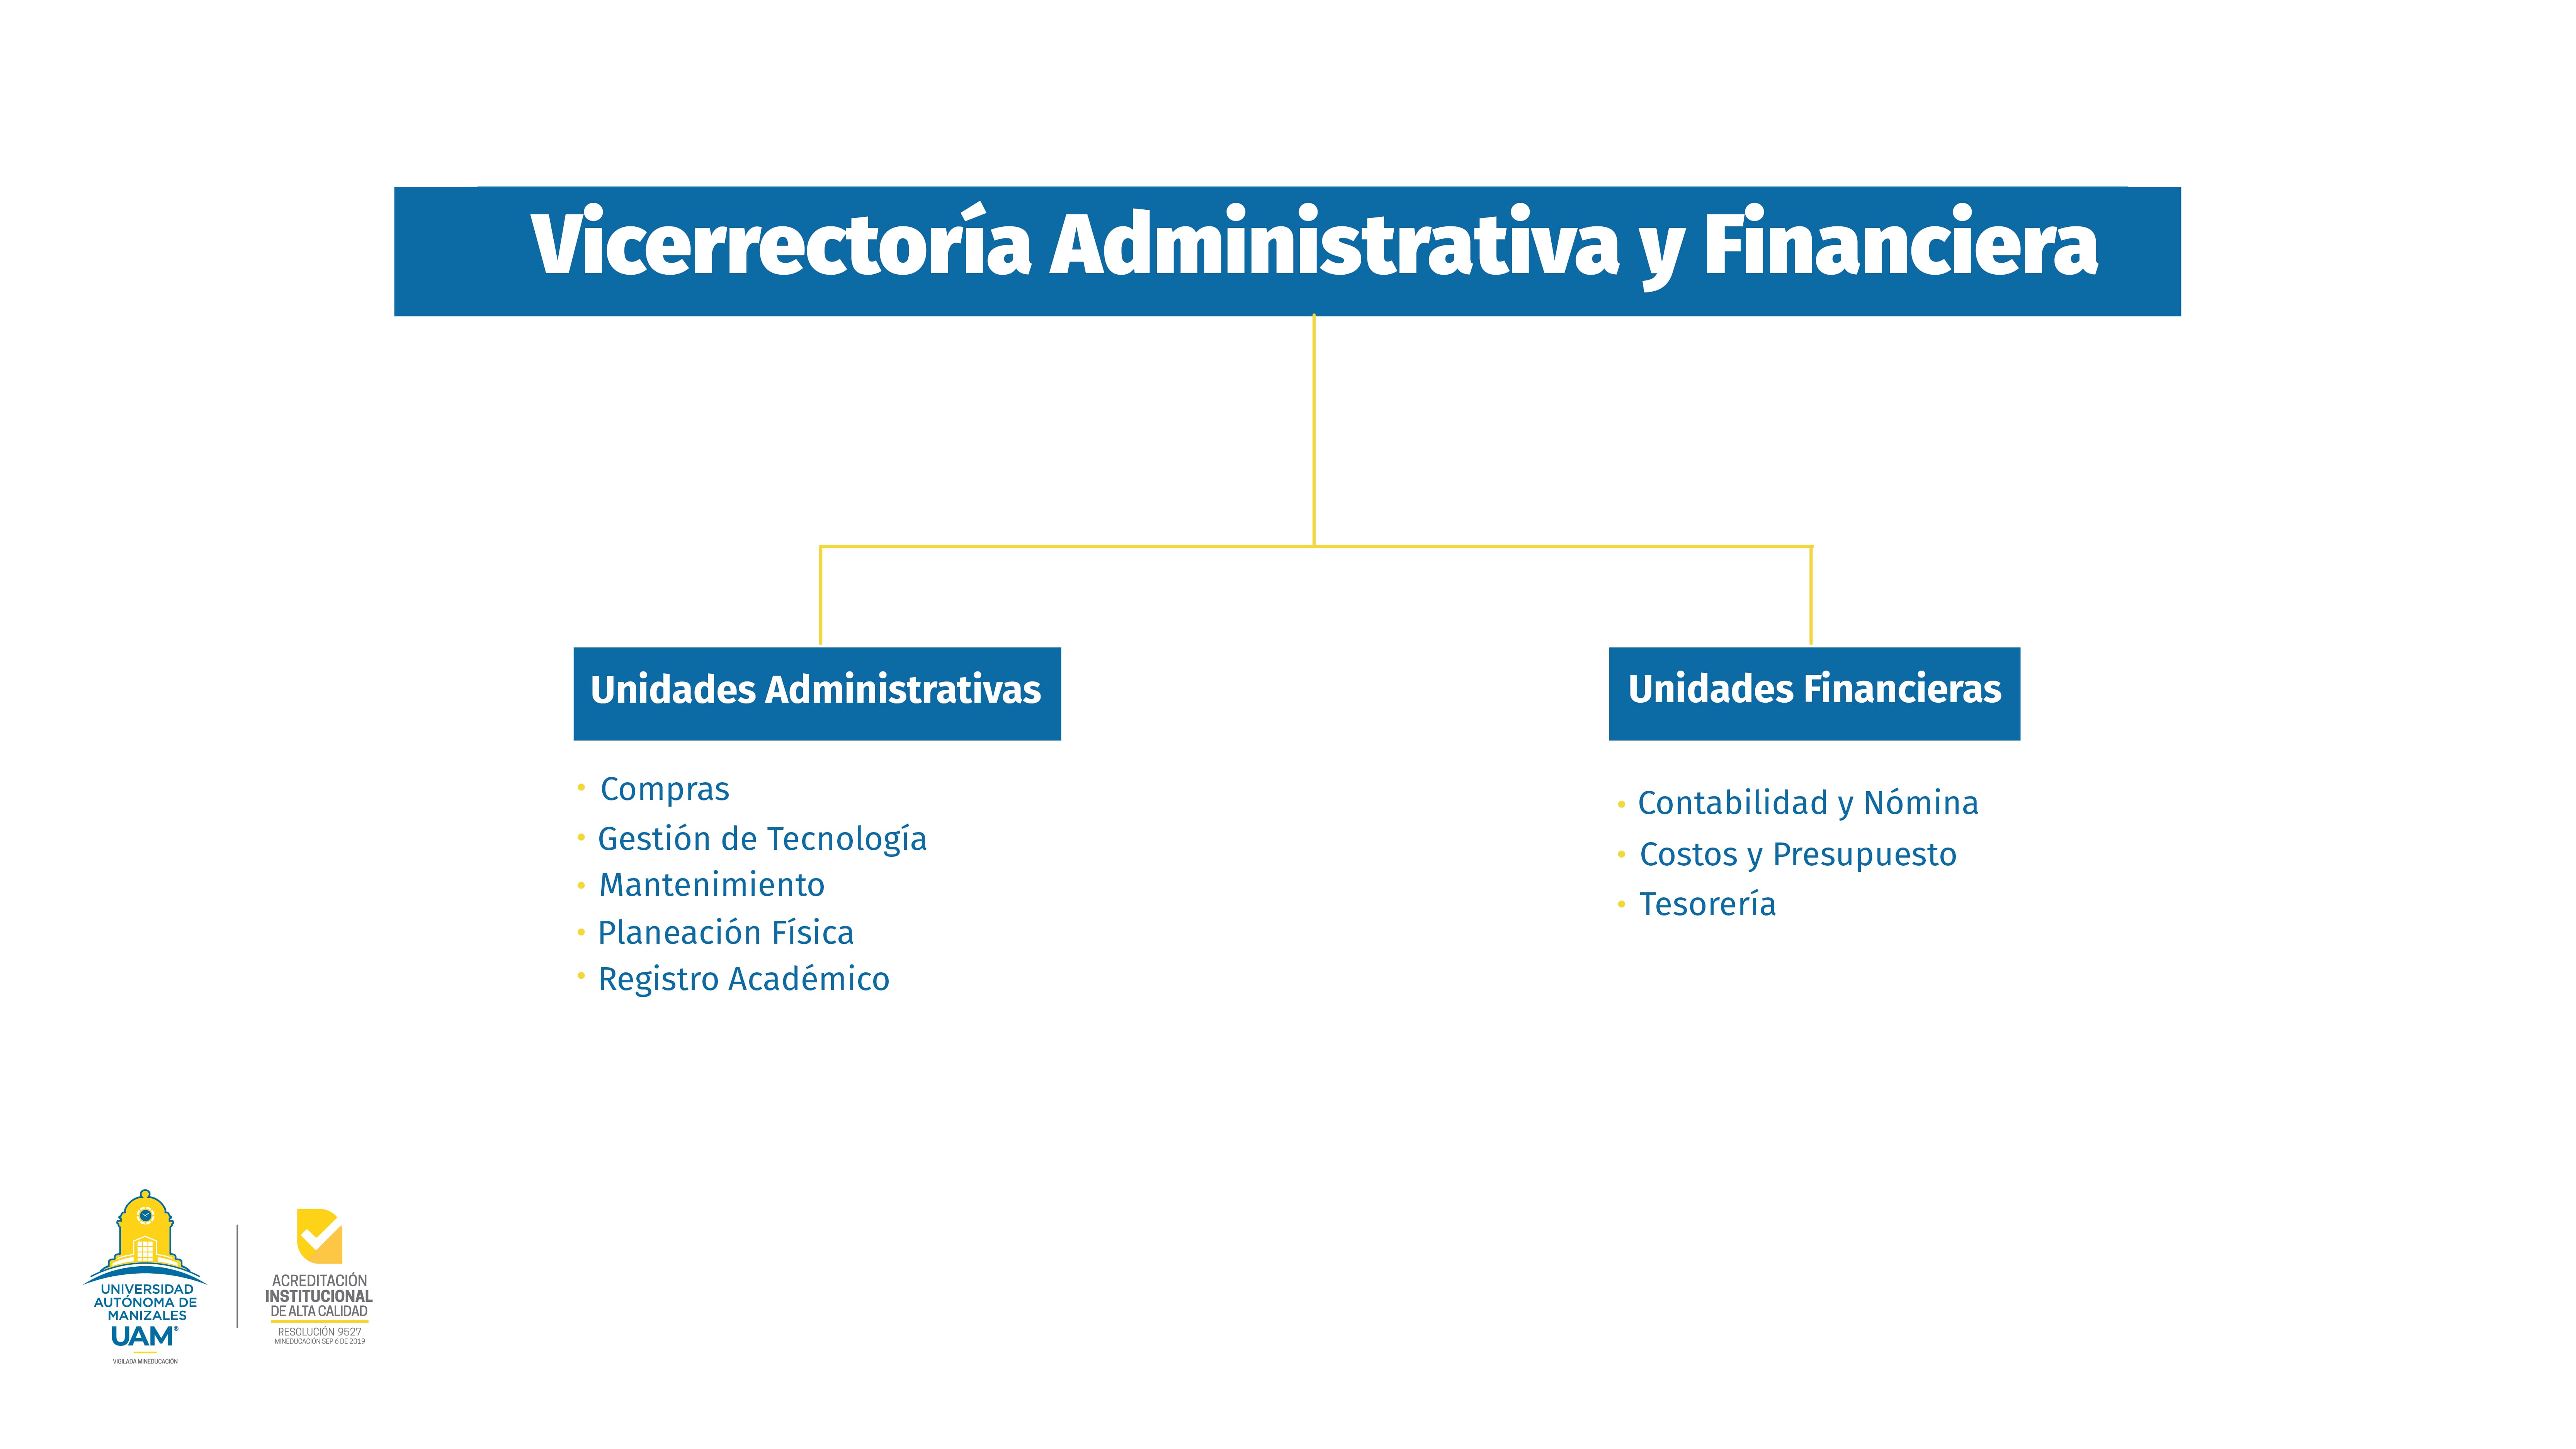 Vicerrectoría Administrativa y Financiera